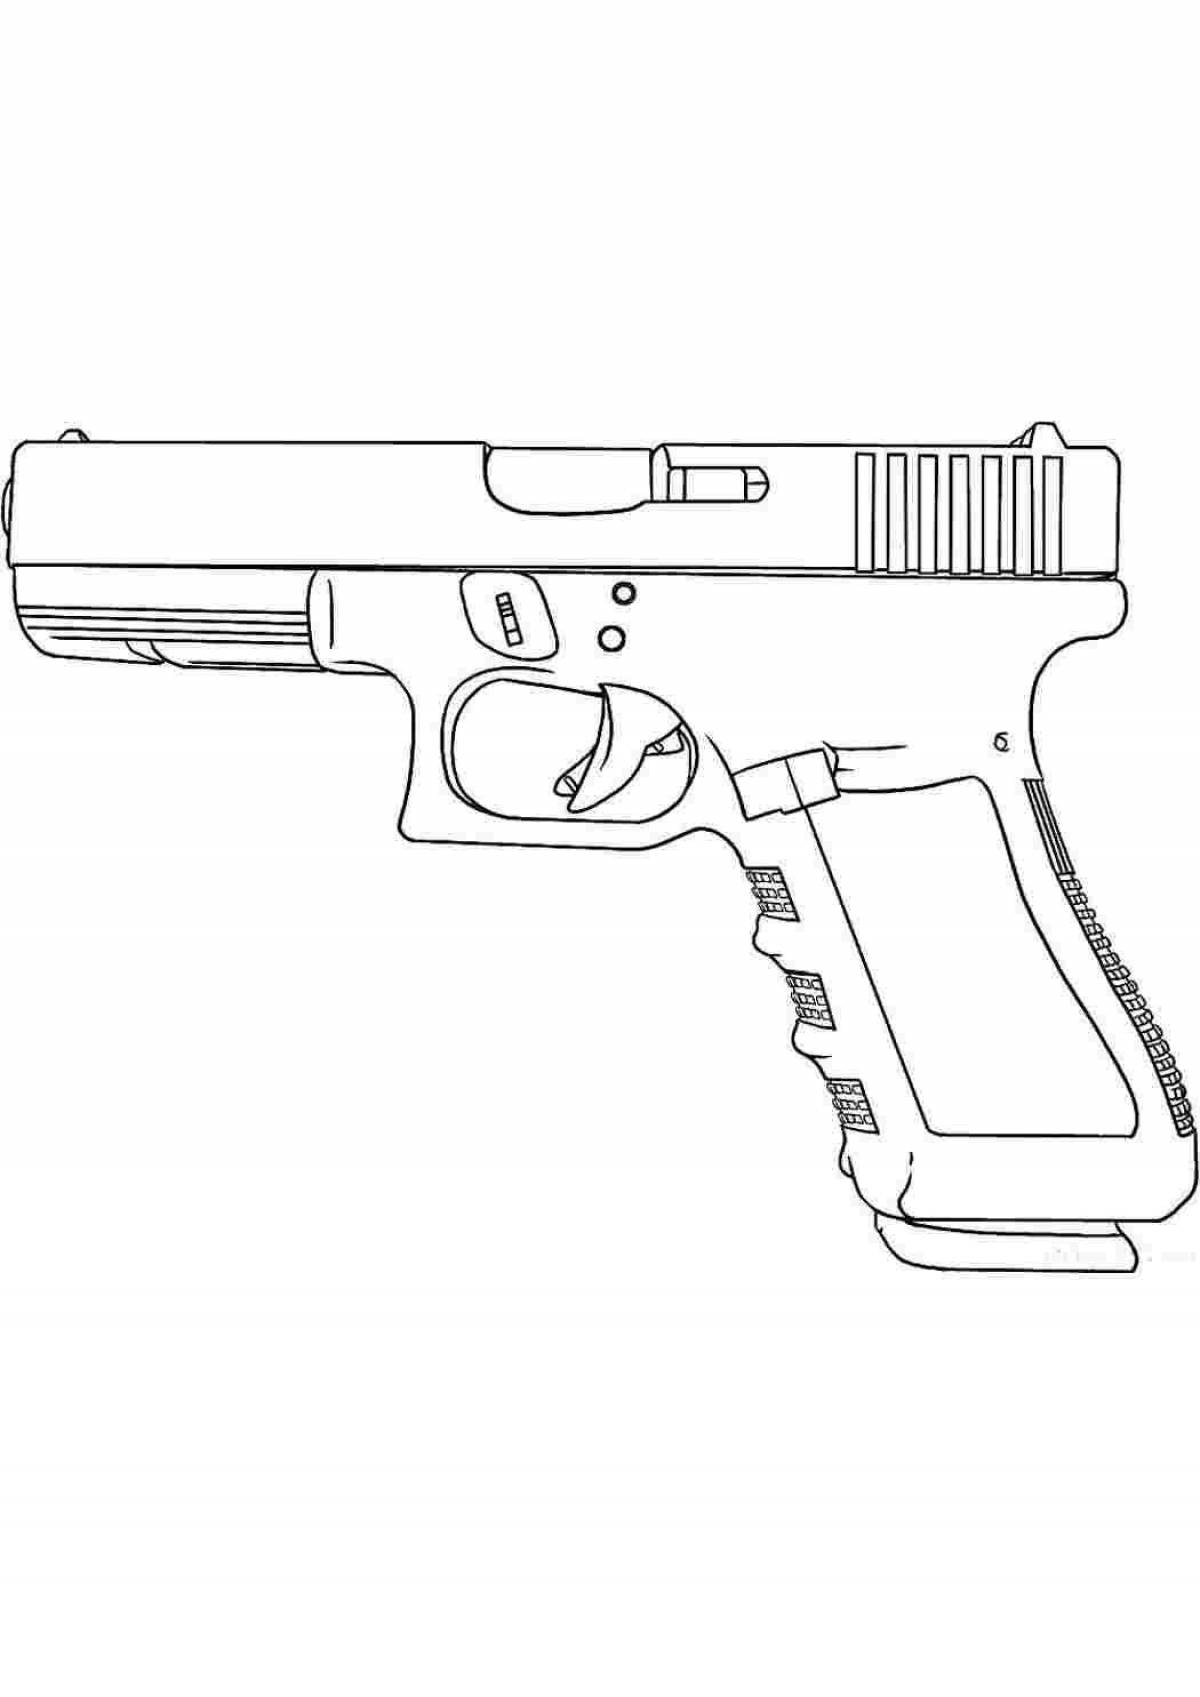 Рисунки карандашом легкие для начинающих пистолет